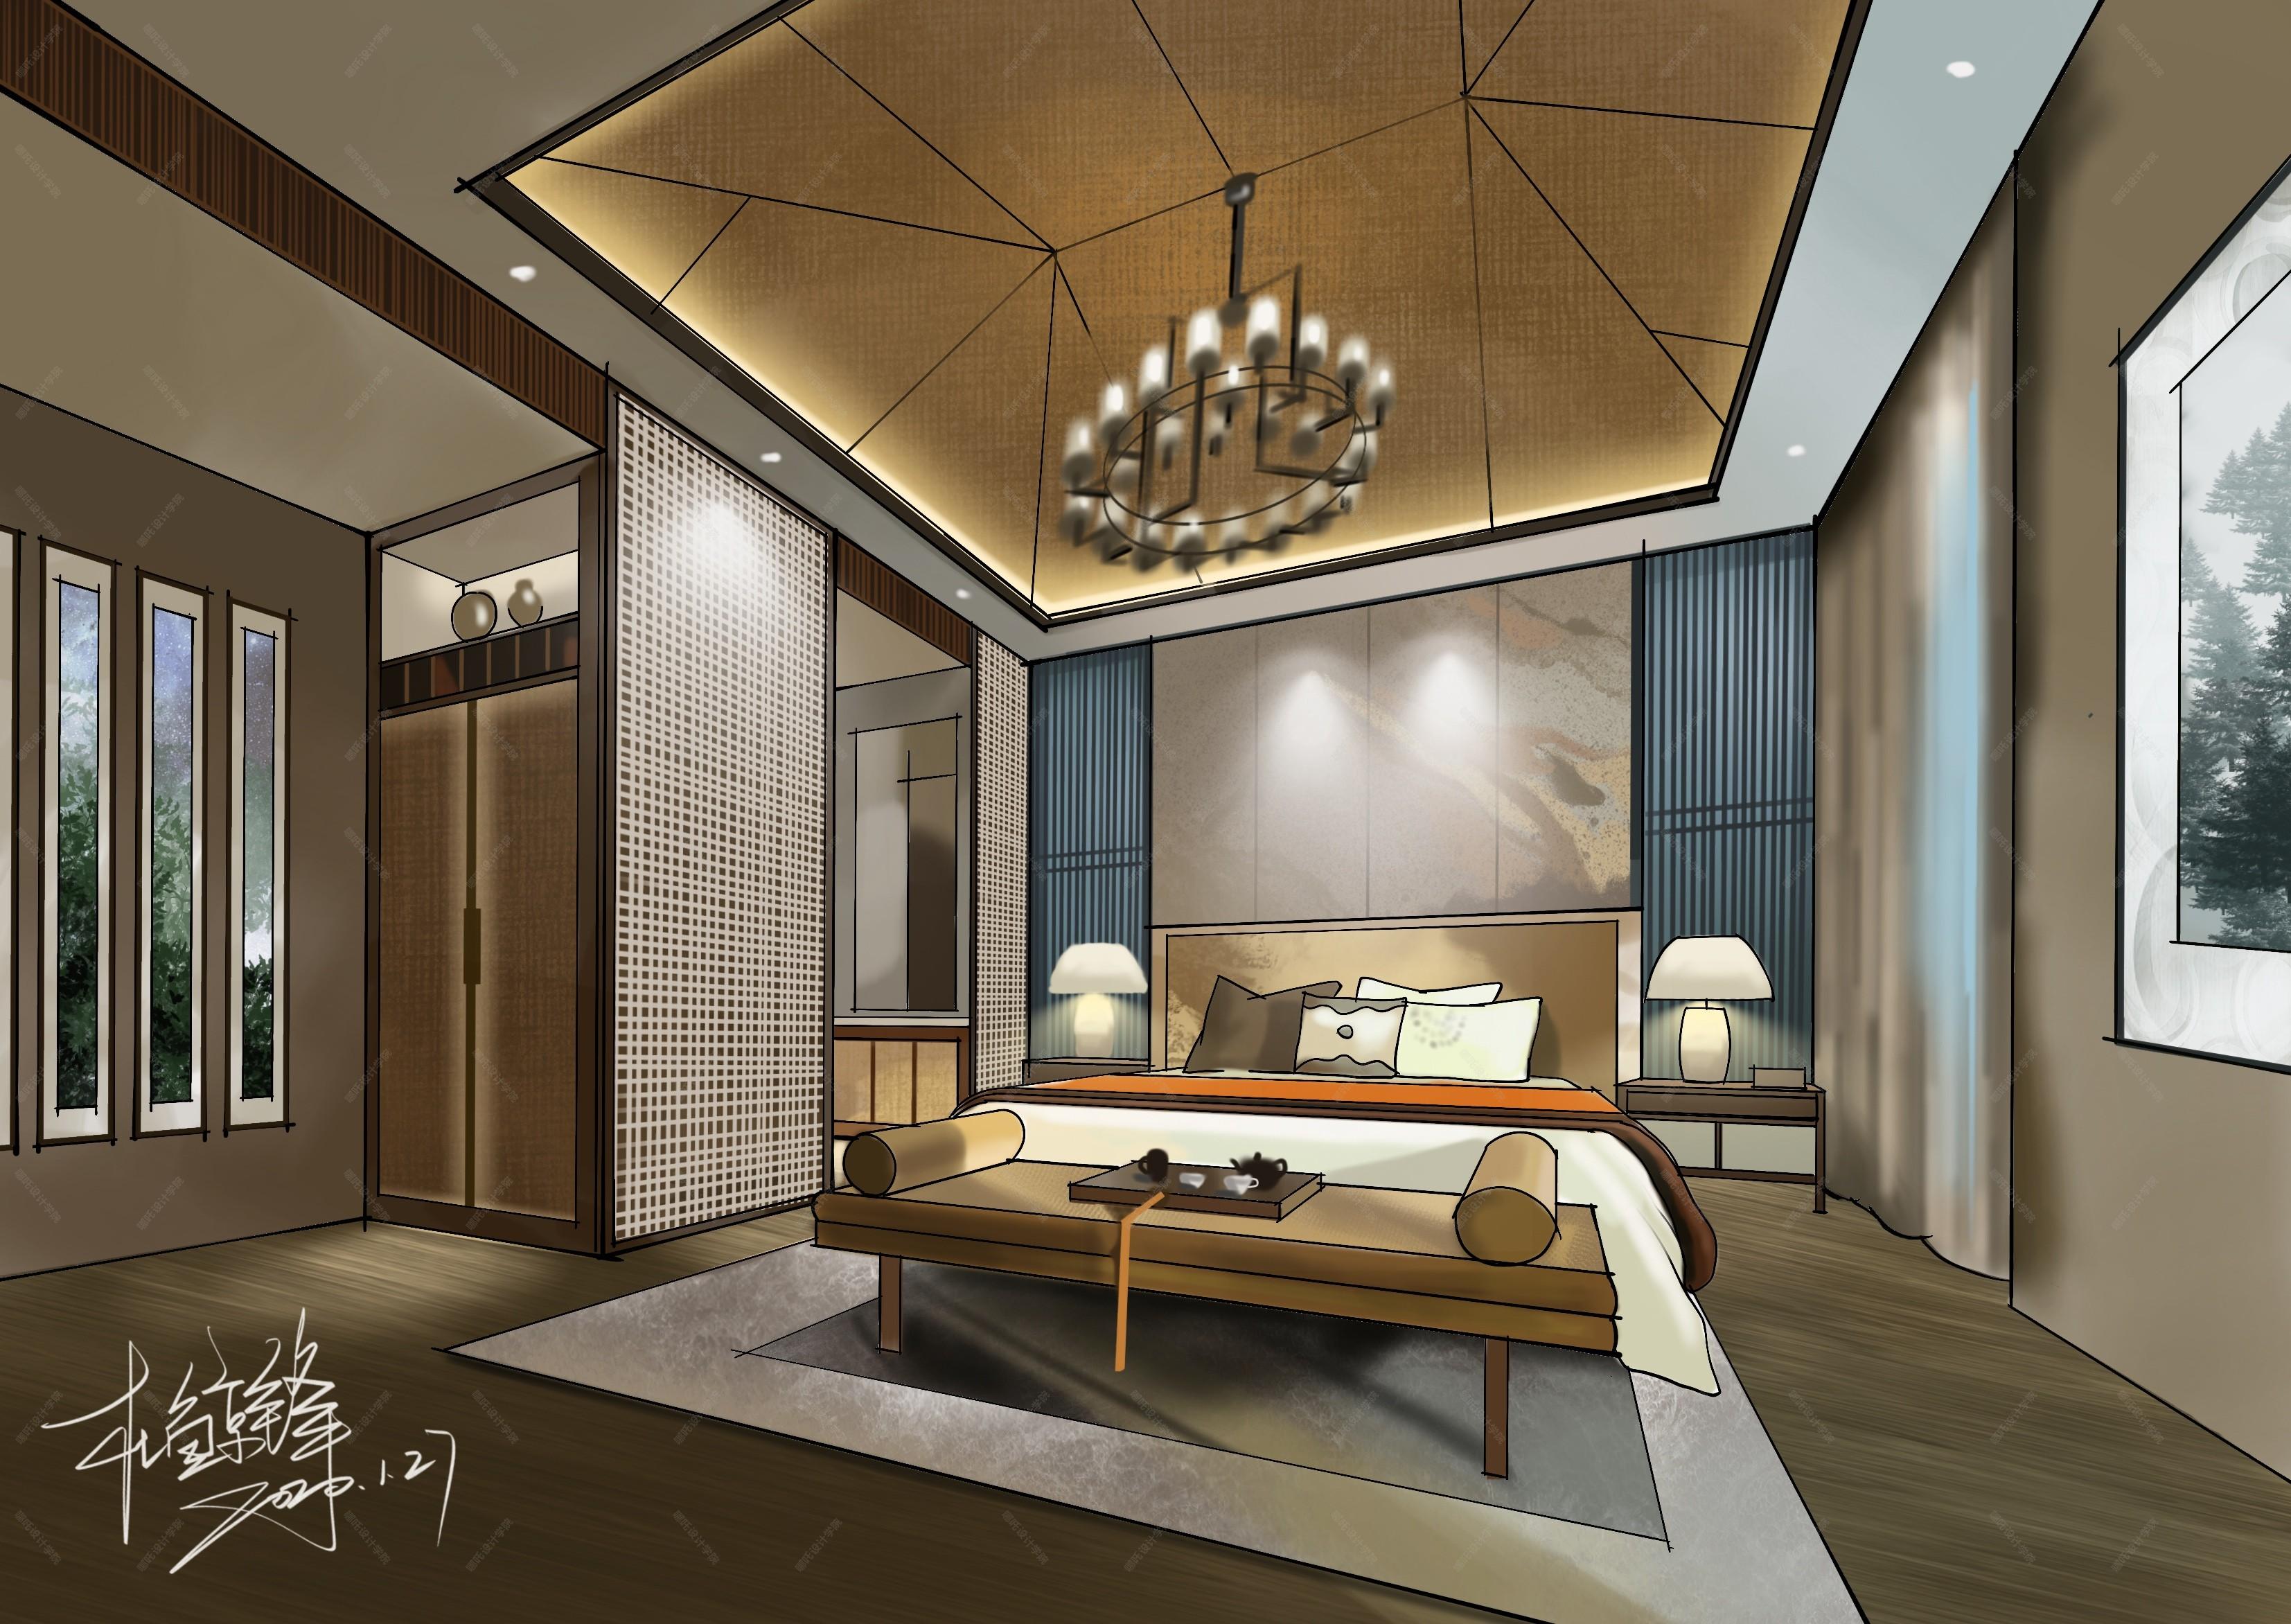 新中式手绘效果图 - 效果图交流区-建e室内设计网